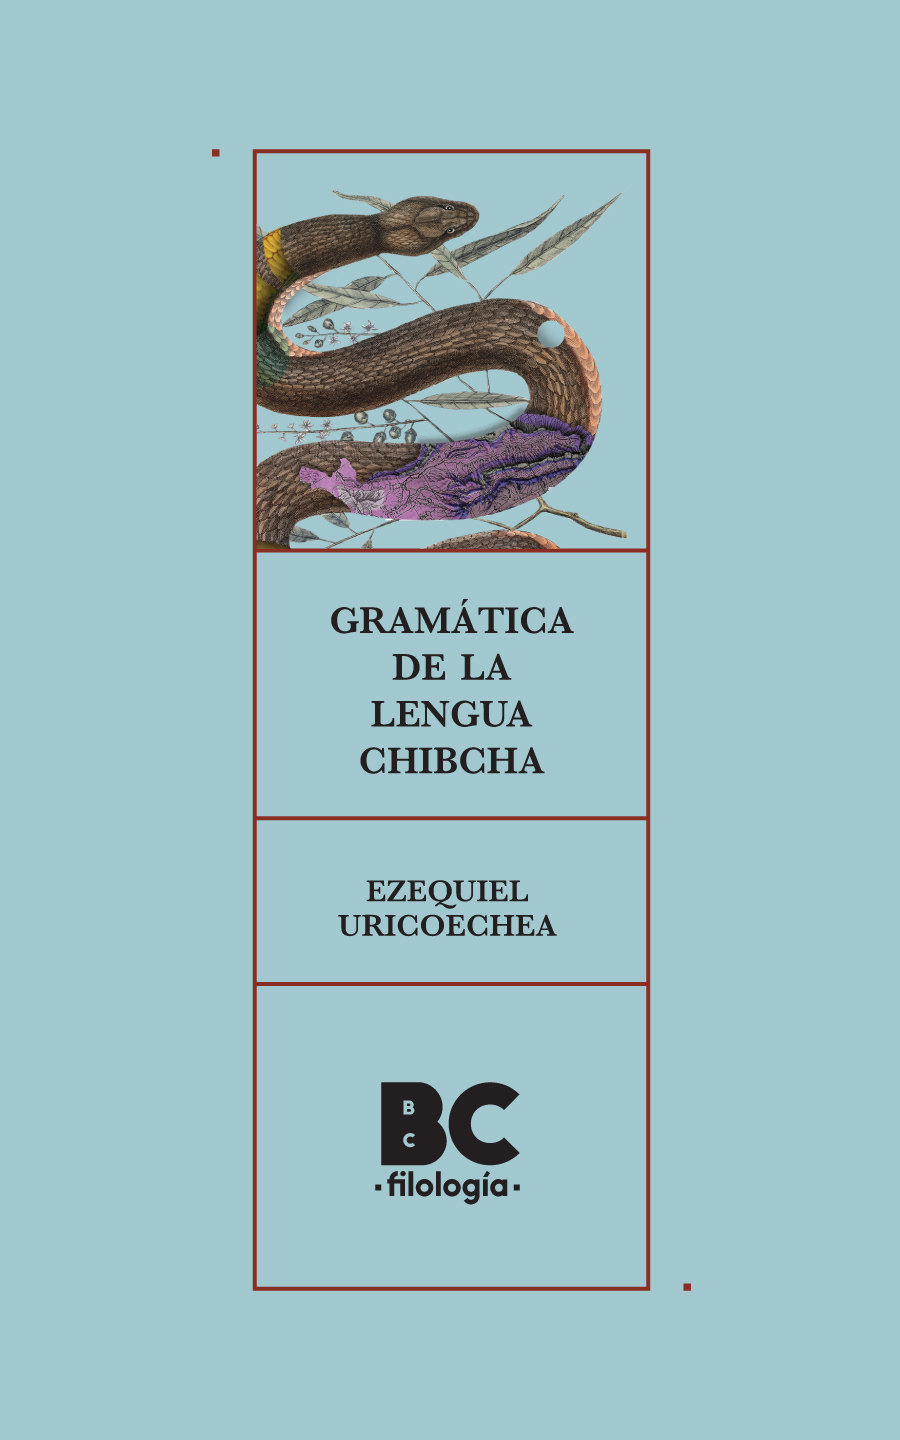 Catalogación en la publicación Biblioteca Nacional de Colombia Uricoechea - photo 2